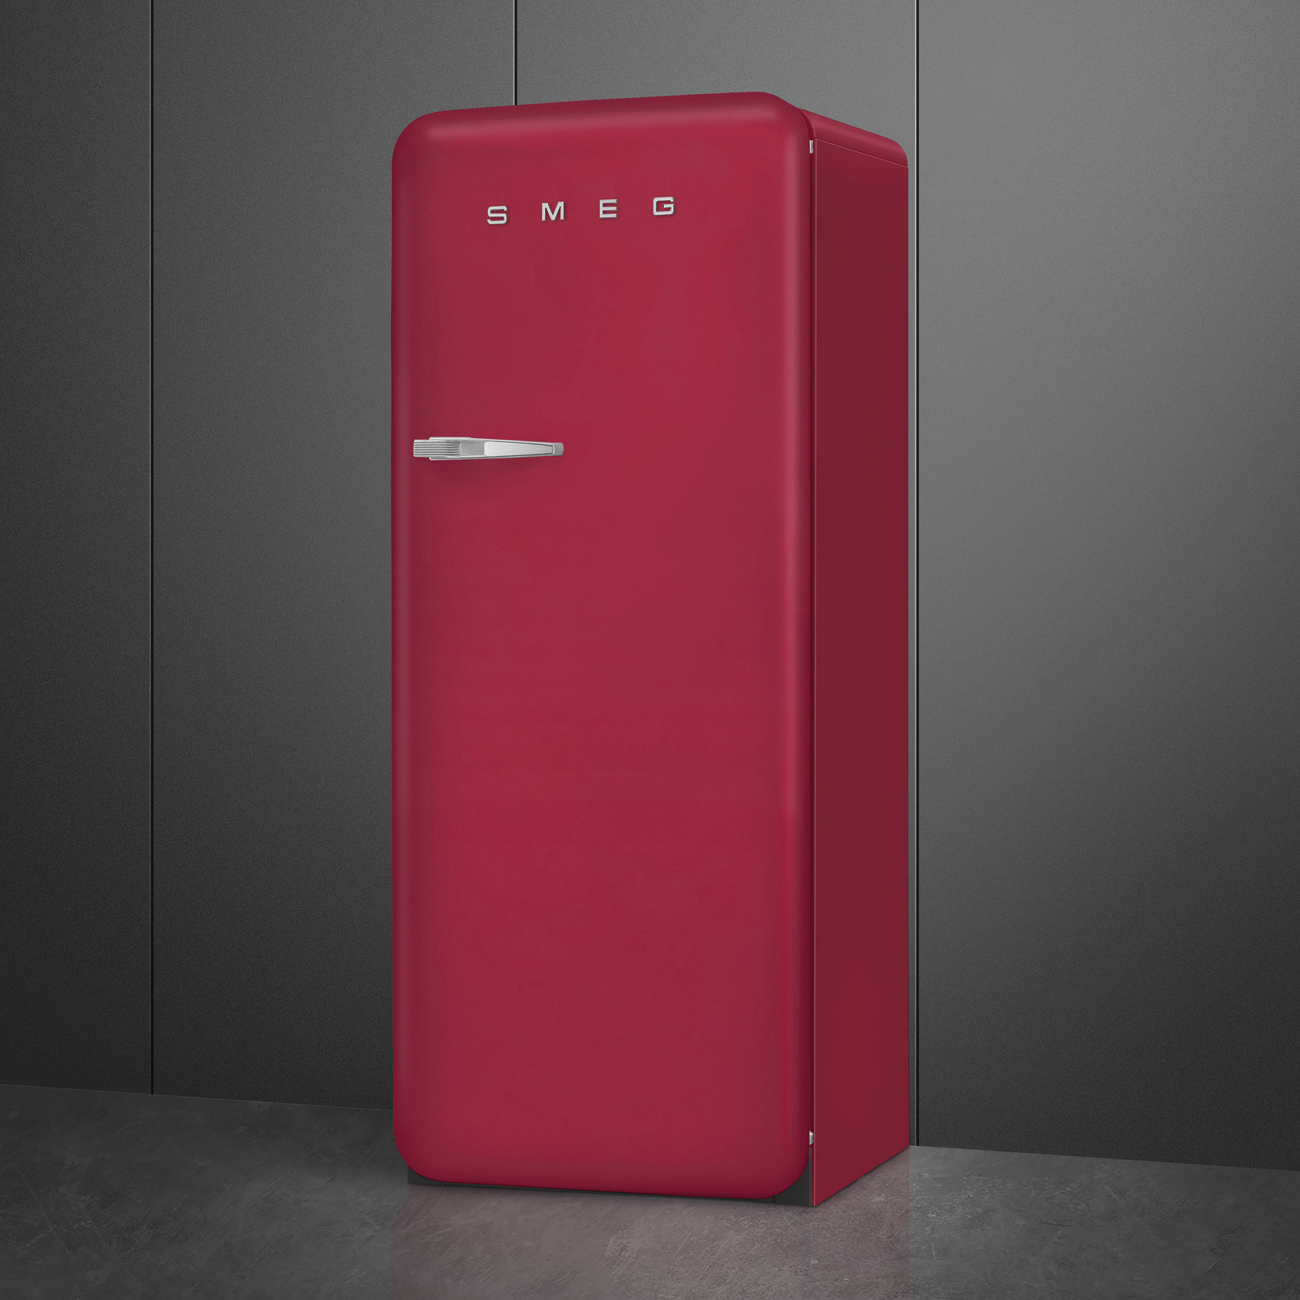 Ruby Red refrigerator - Smeg_3